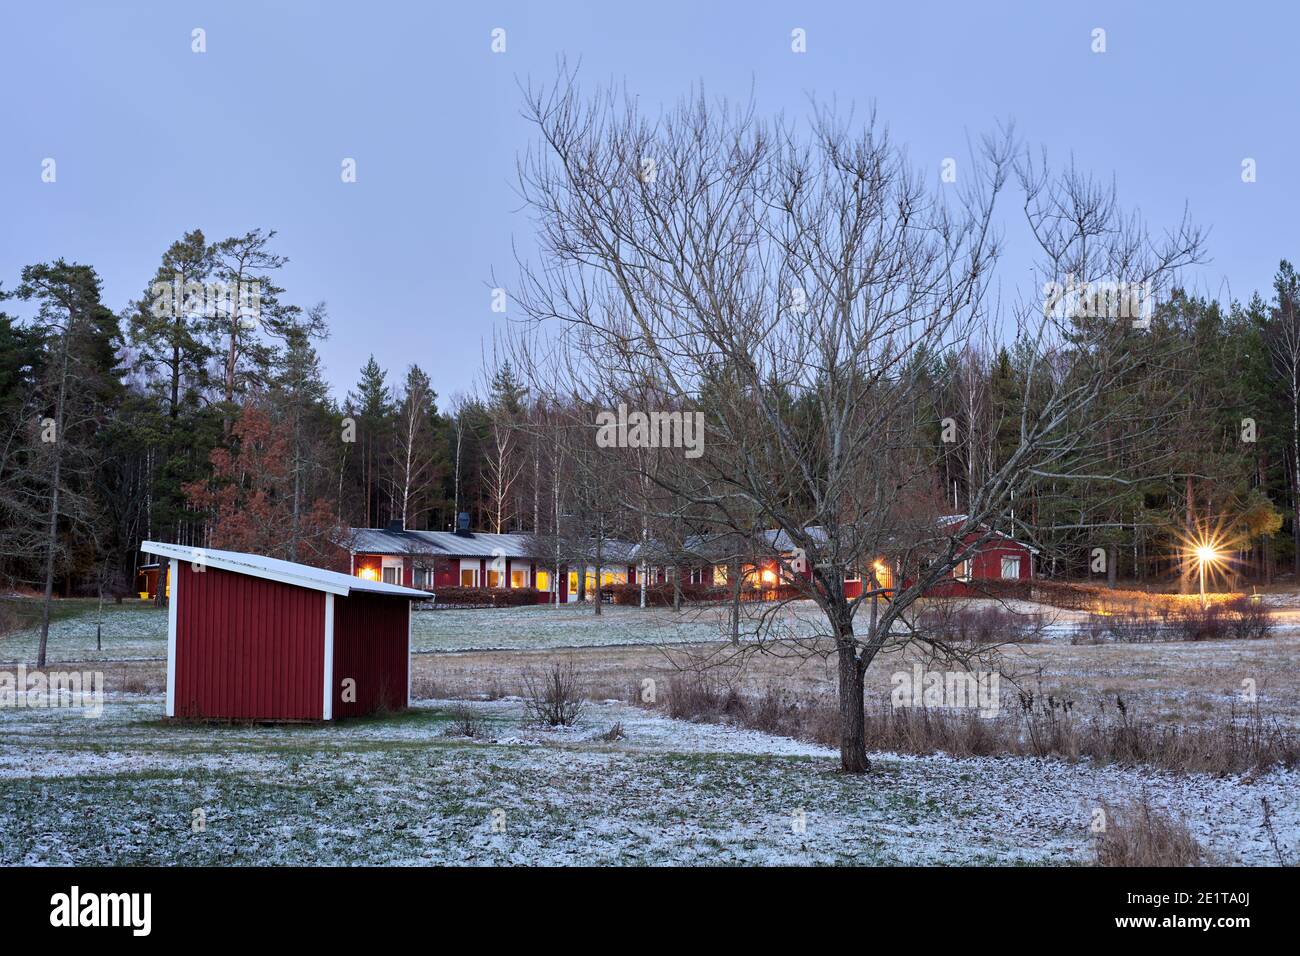 Willow tree next to a red storage cottage in front of Ö-gården in Röskär, Bogesundslandet, outside Vaxholm, Sweden Stock Photo